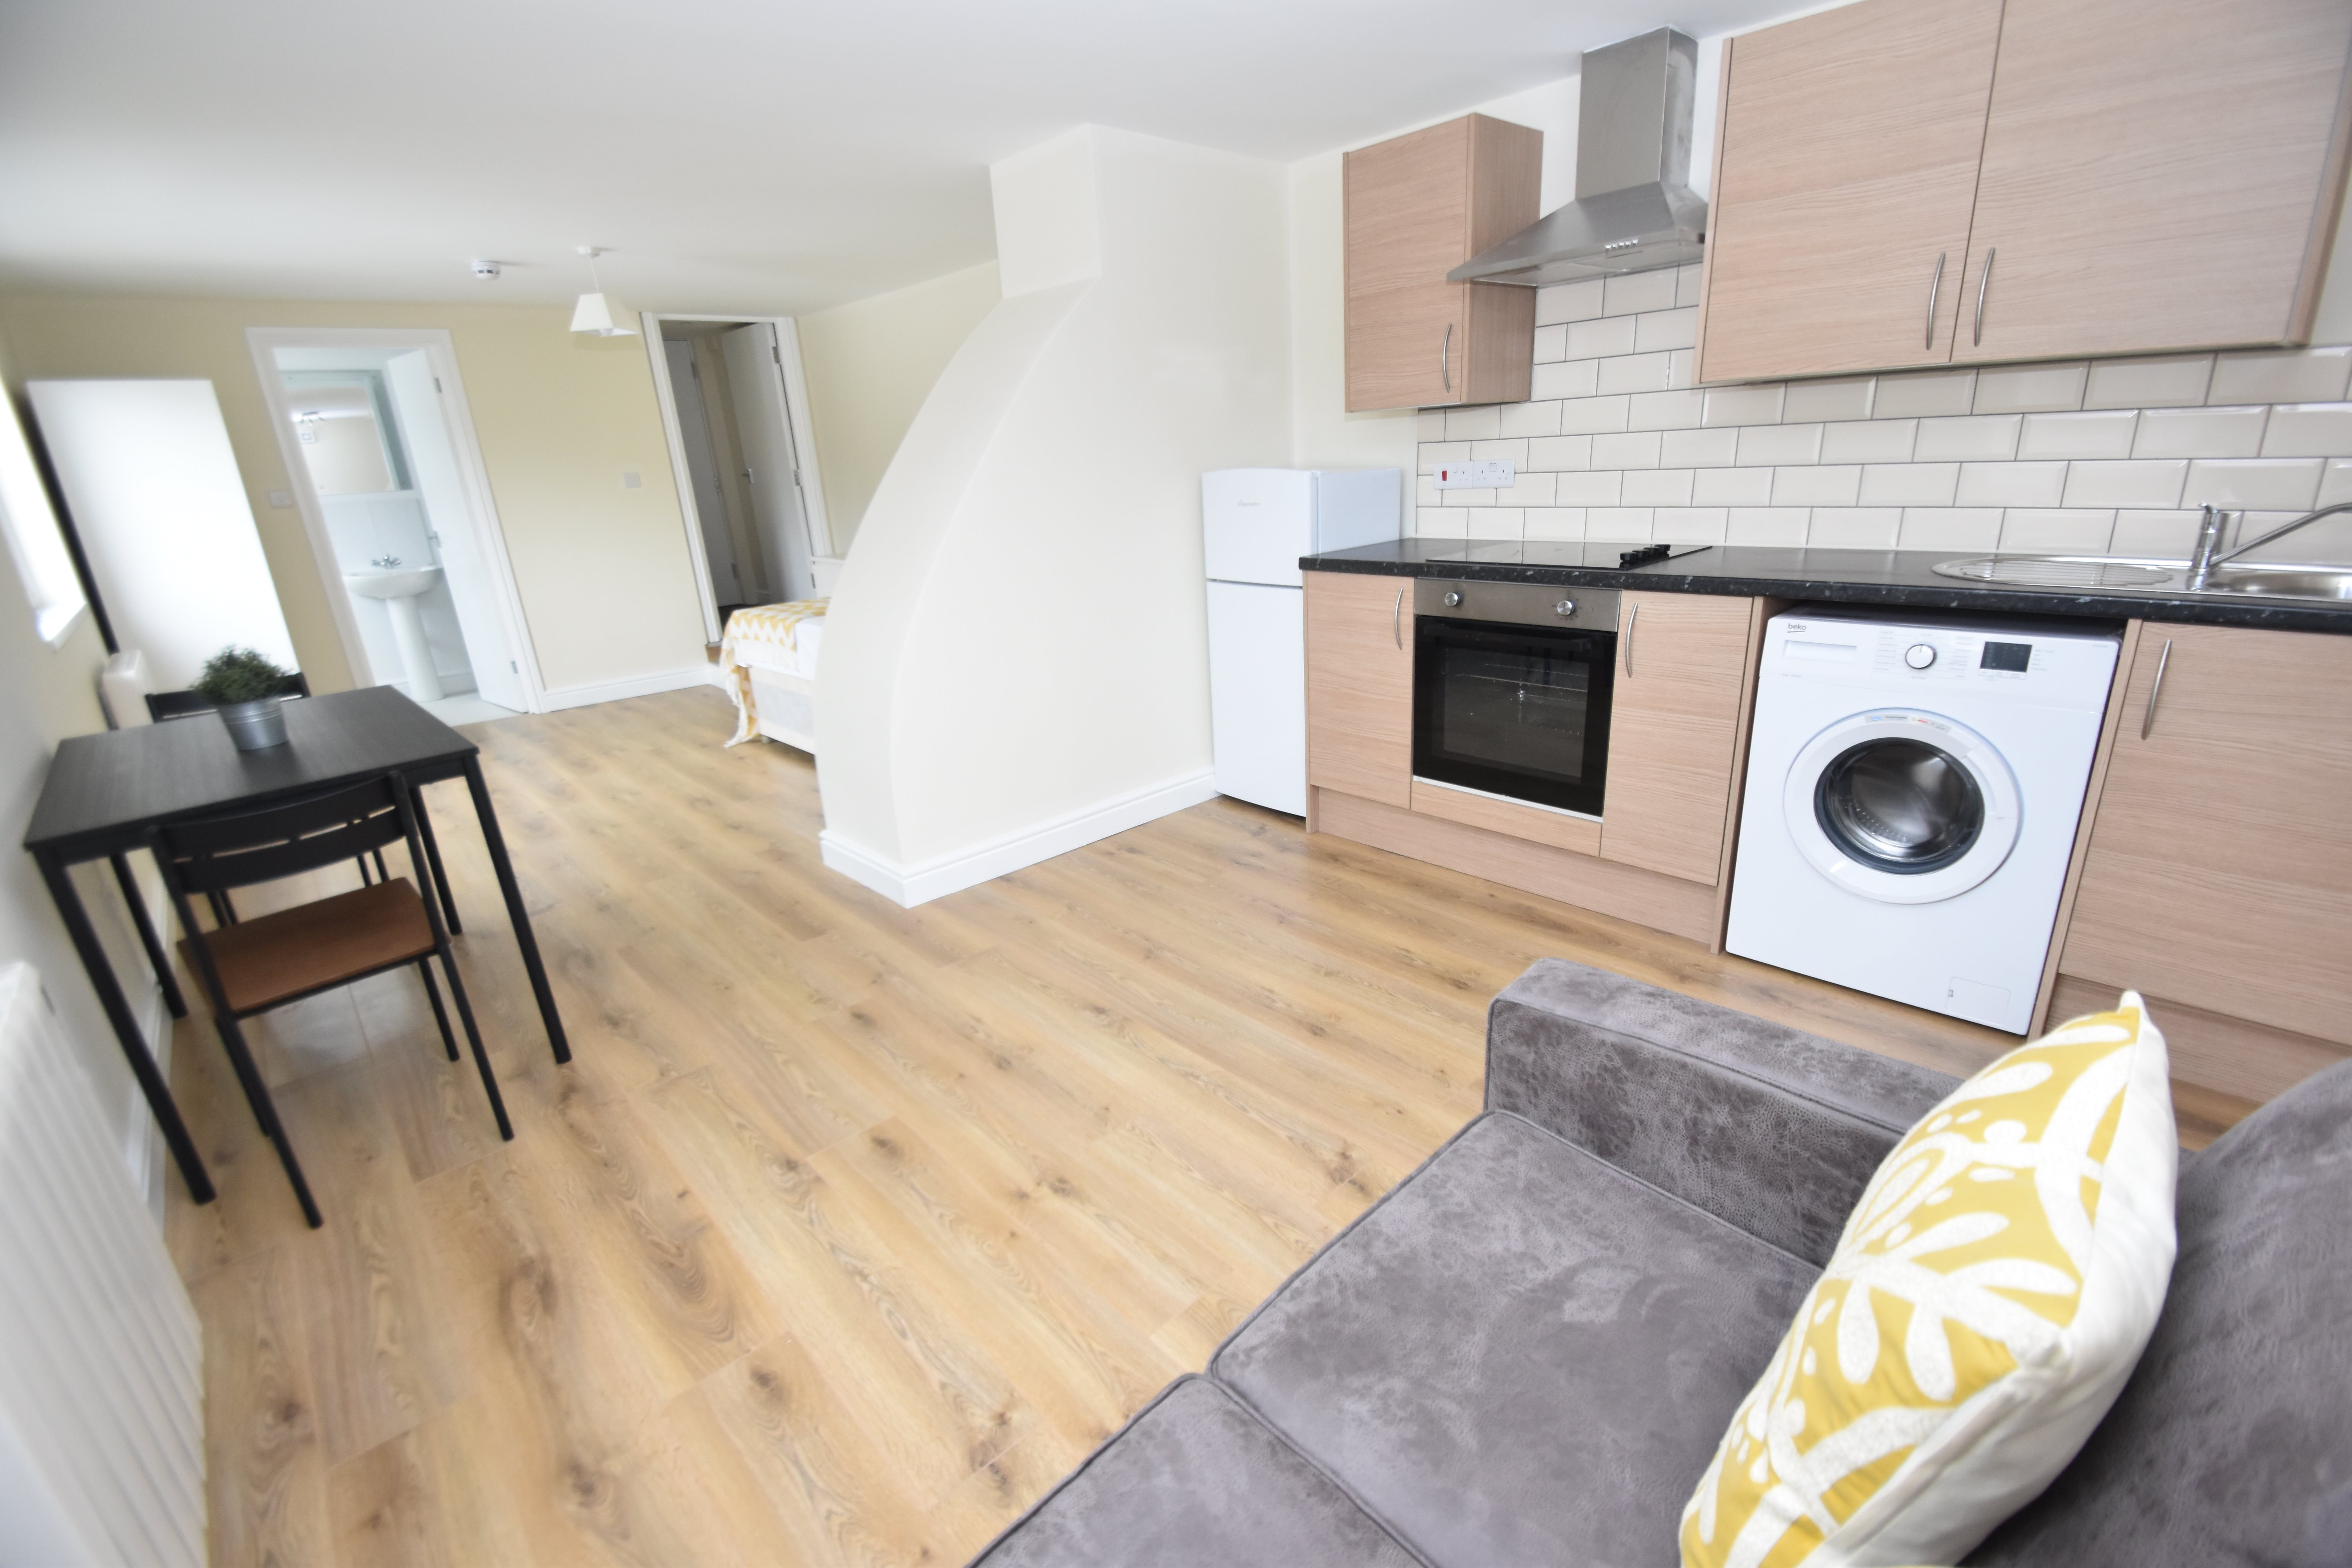 1 bed studio flat to rent in Marlborough Road, Penylan - Property Image 1